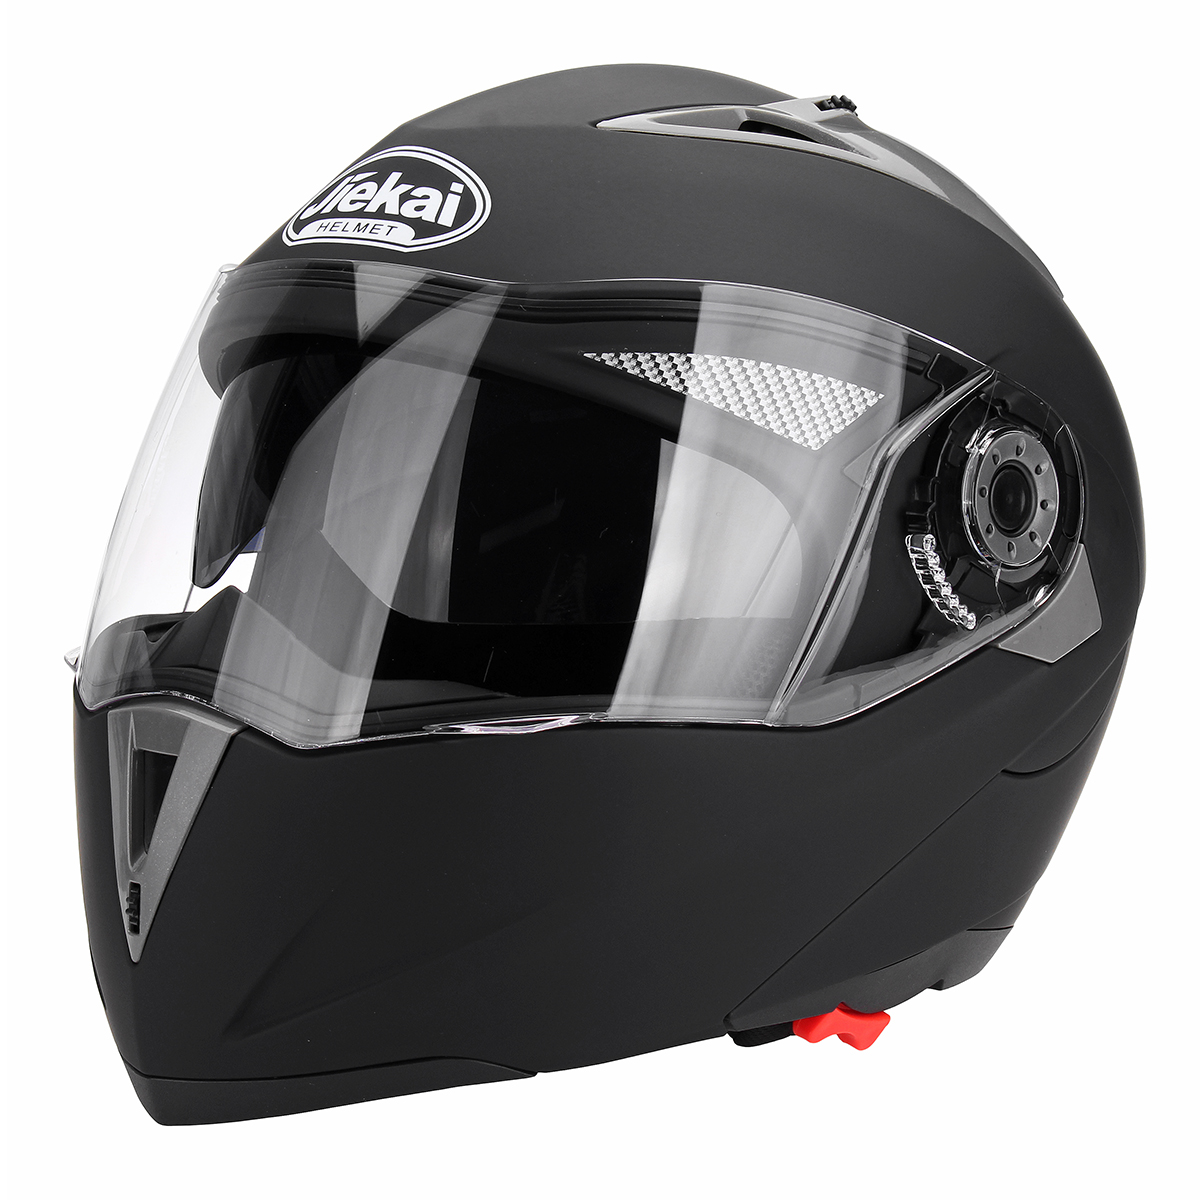 Motorrad-Helm mit offenem Gesicht, Doppelvisier, hochklappbar, Erwachsener, Vollgesichts-Motocross, Dirt Bike, M/L/XL